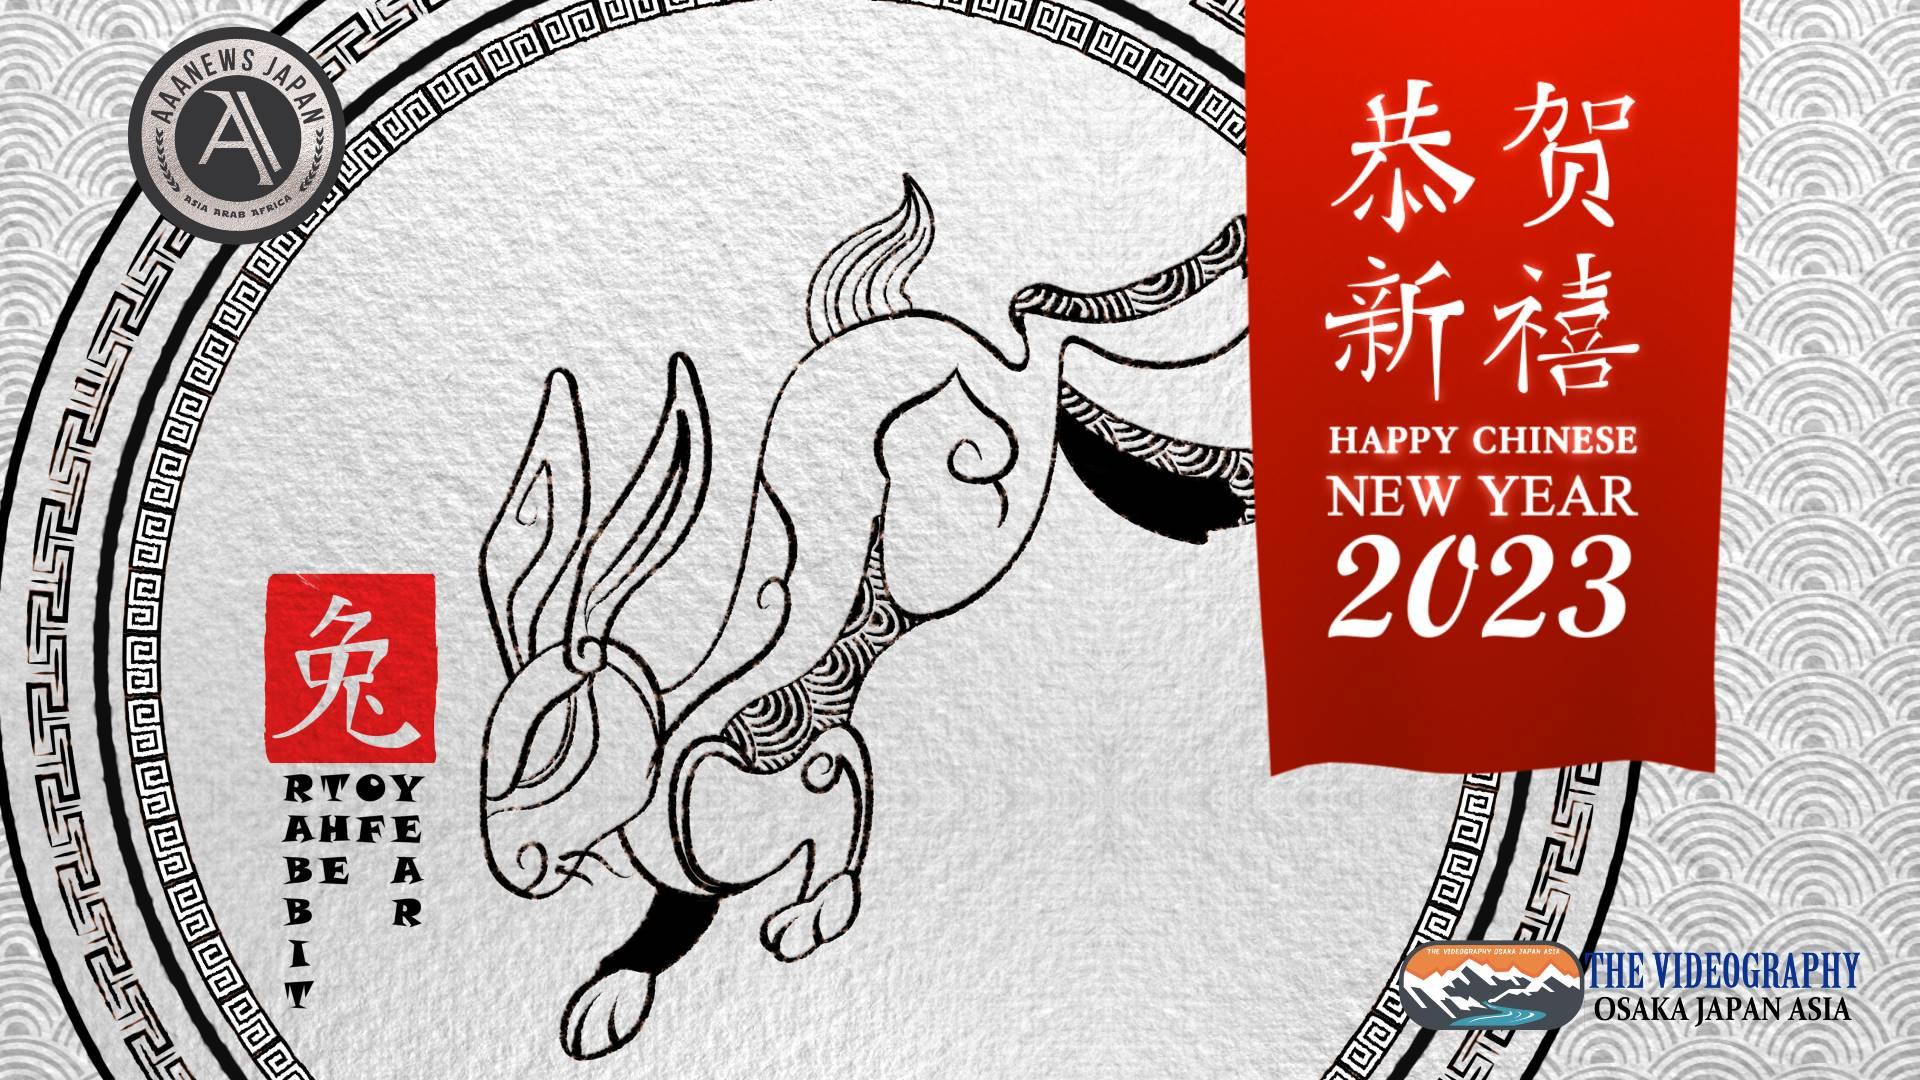 祝你新年好! 中国 旧正月 春節 春节 2023 卯年 新年オープニングムービー